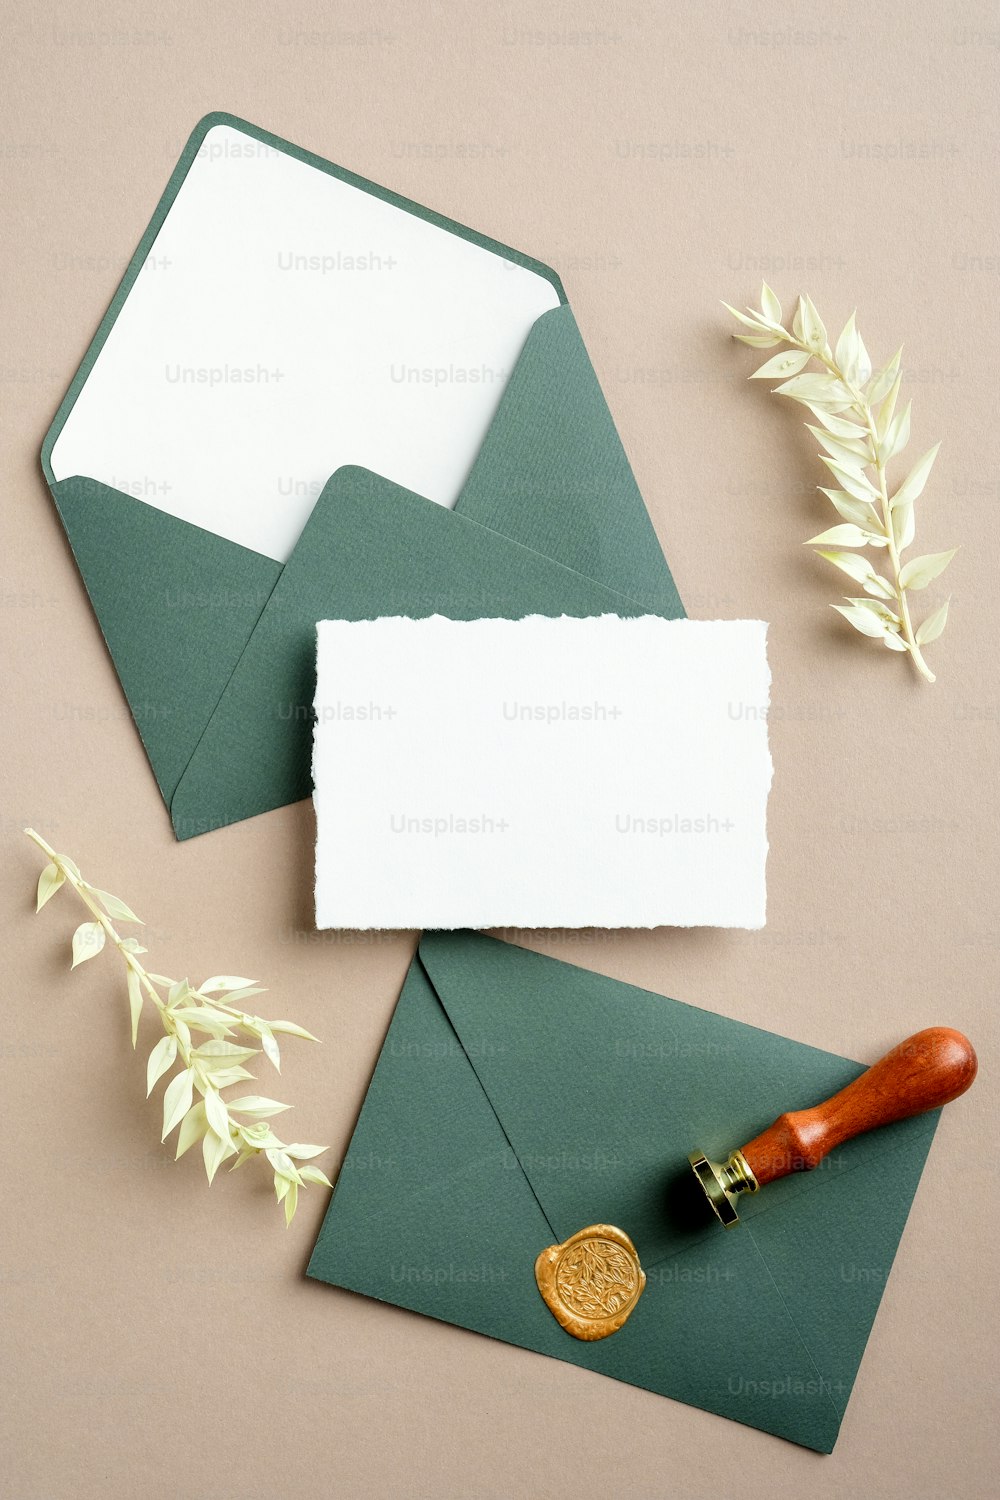 Sobres verdes vintage con sello de cera, tarjeta de papel en blanco, flores secas sobre fondo beige en pasta. Maqueta de invitación de boda de estilo retro, plantilla de tarjeta de felicitación para cumpleaños.